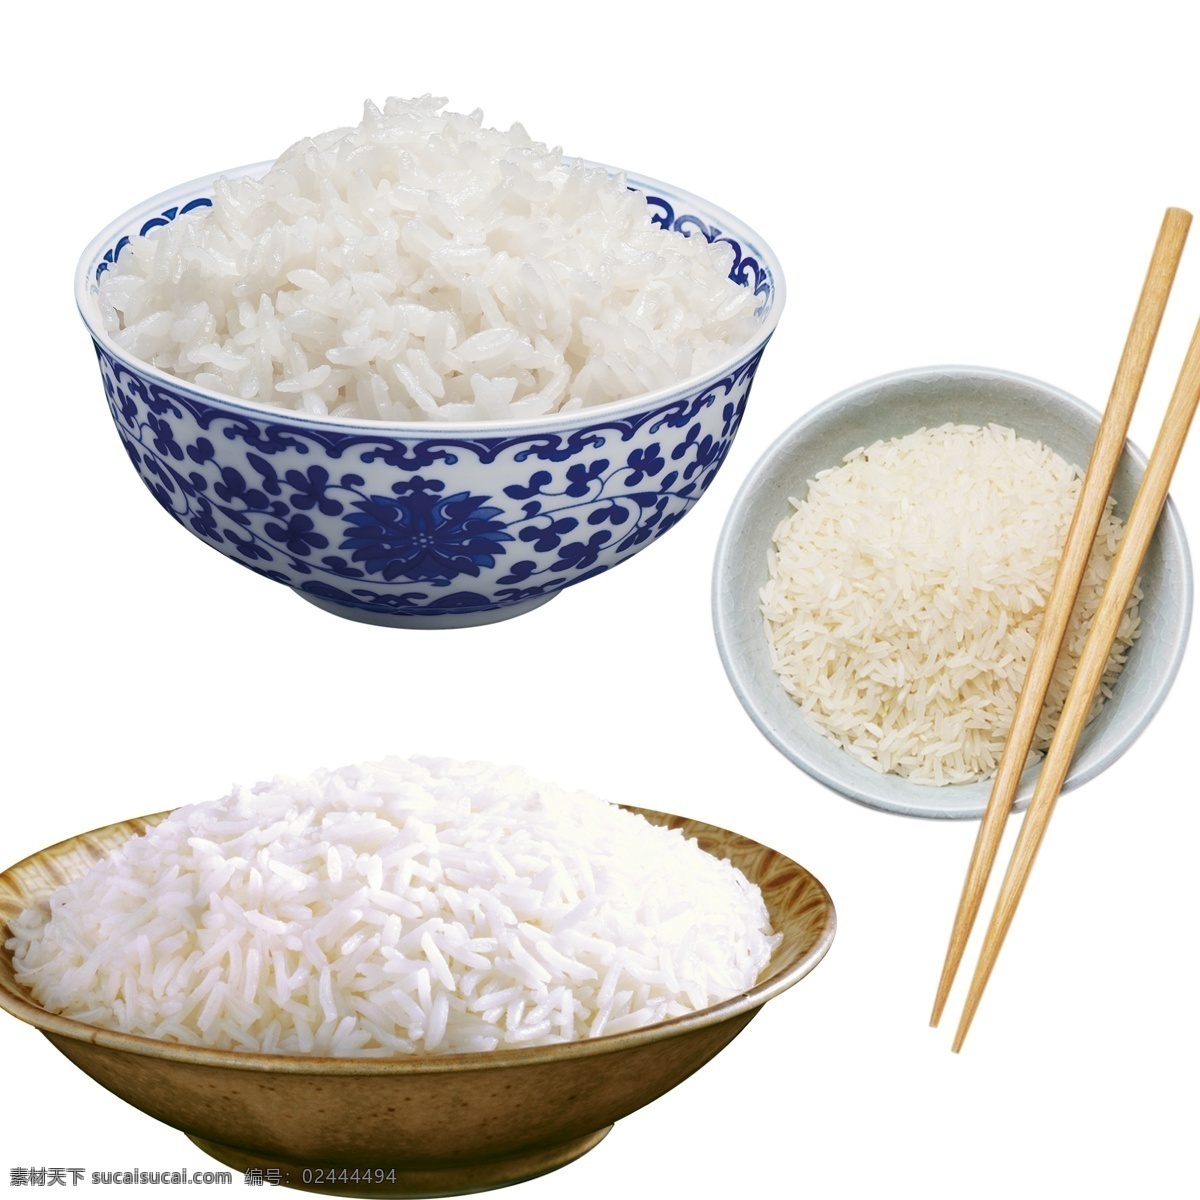 米饭 大米 水稻 稻谷 一碗饭 米粒 饭碗 生活百科 餐饮美食